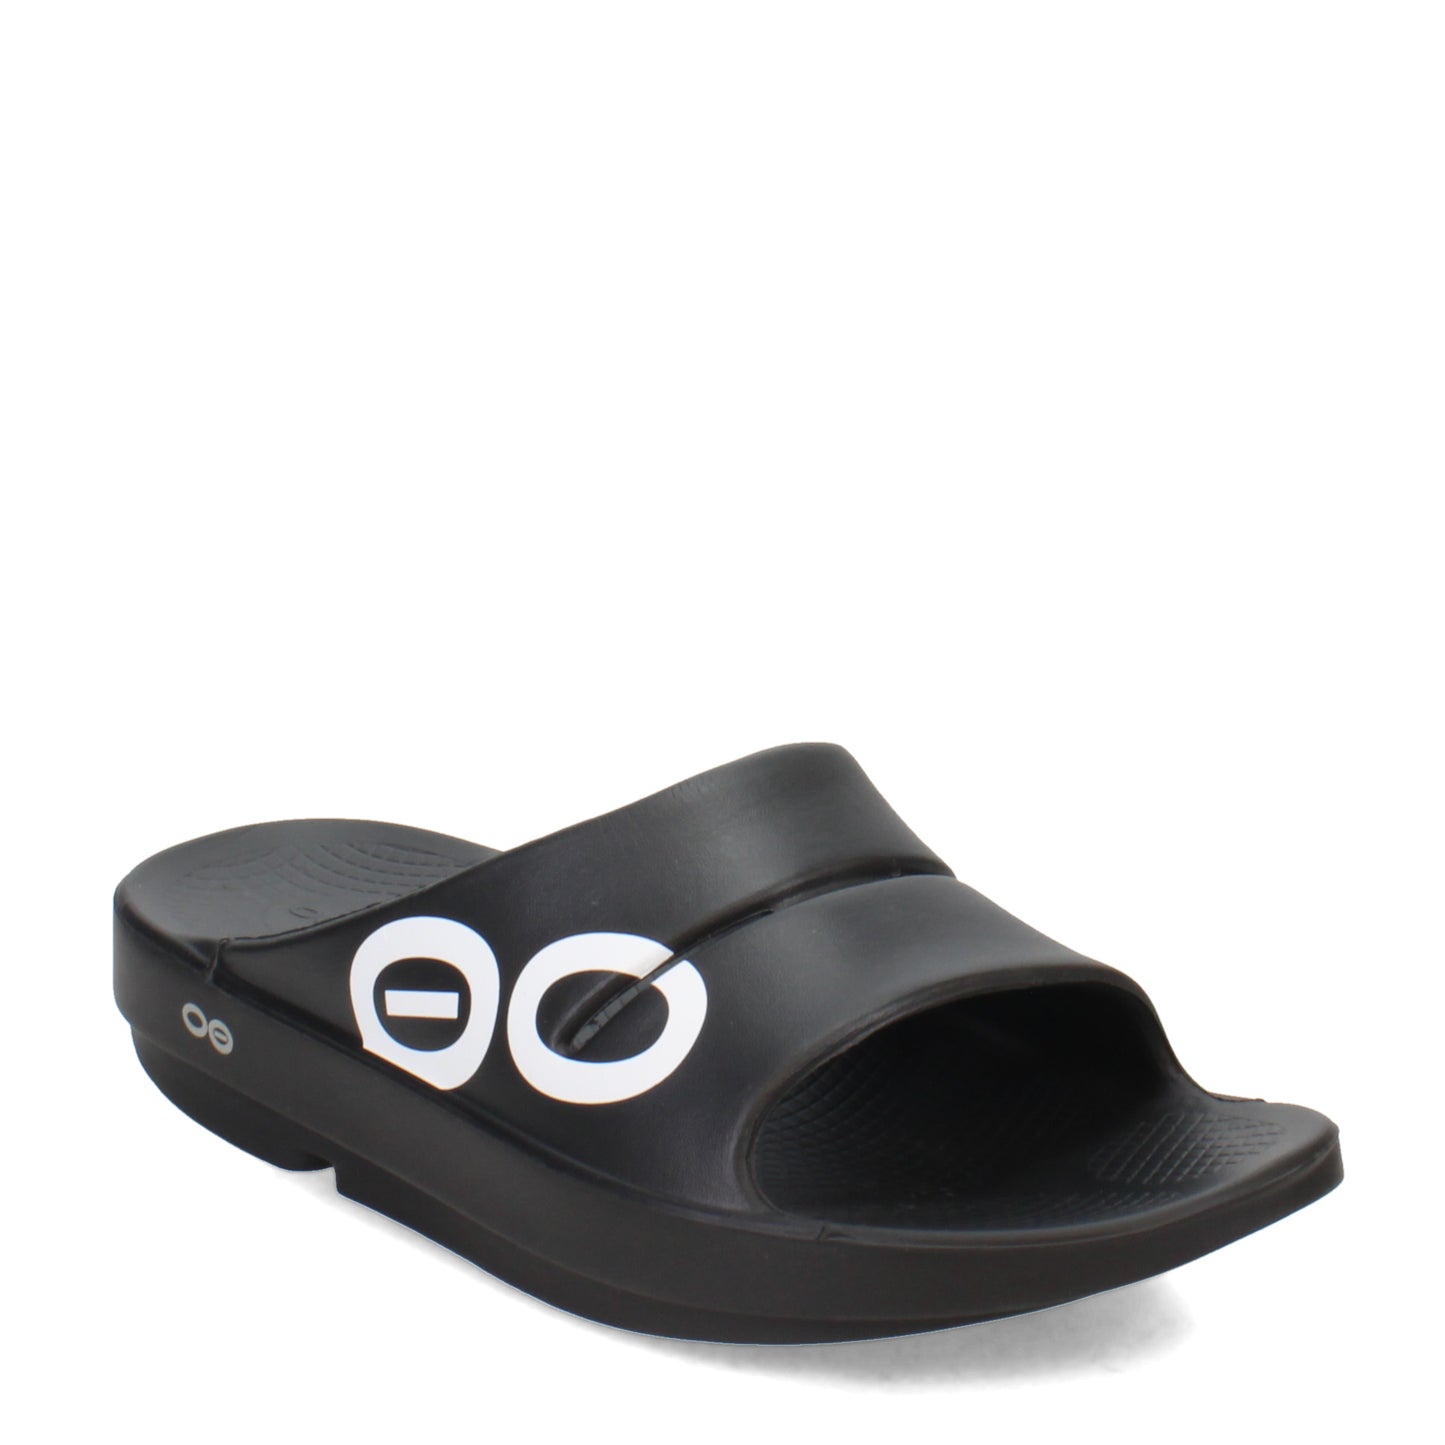 Peltz Shoes  Women's Oofos OOahh Slide Sandal BLACK/WHITE 1500-BLACKWHT